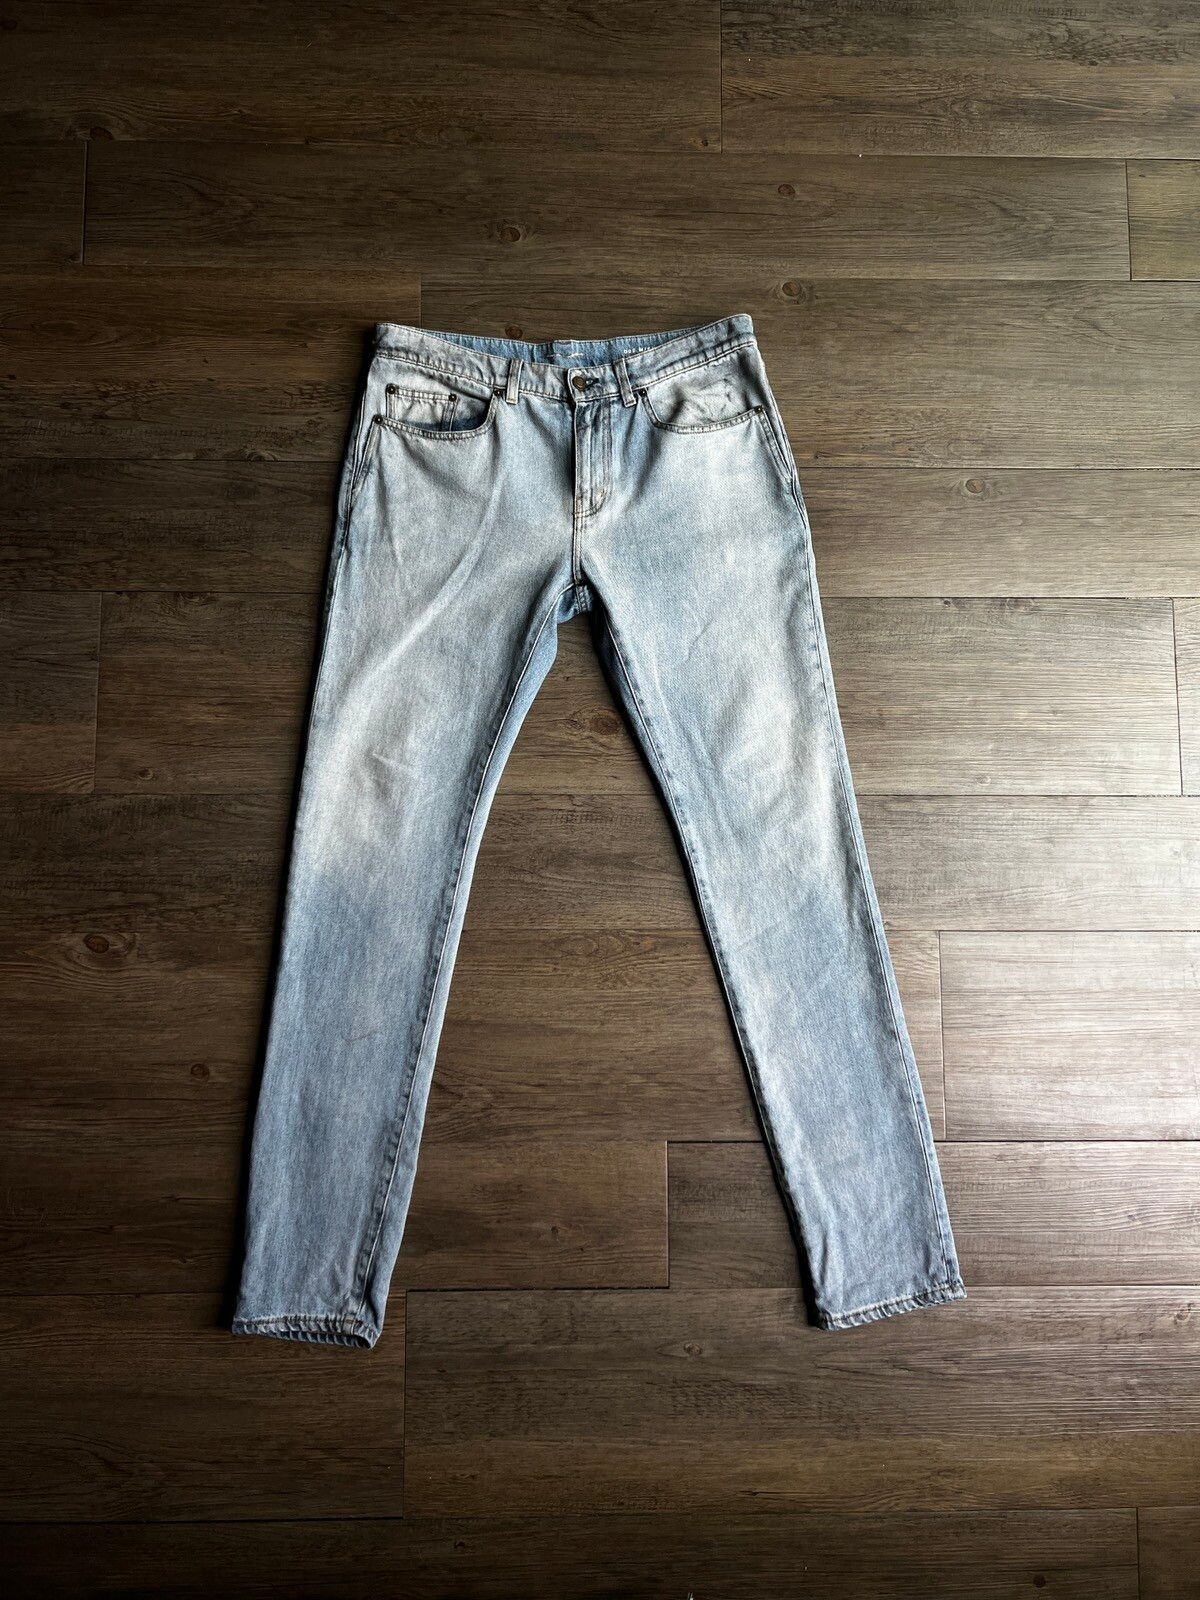 Saint Laurent Paris Saint Laurent - D02 jeans | Grailed